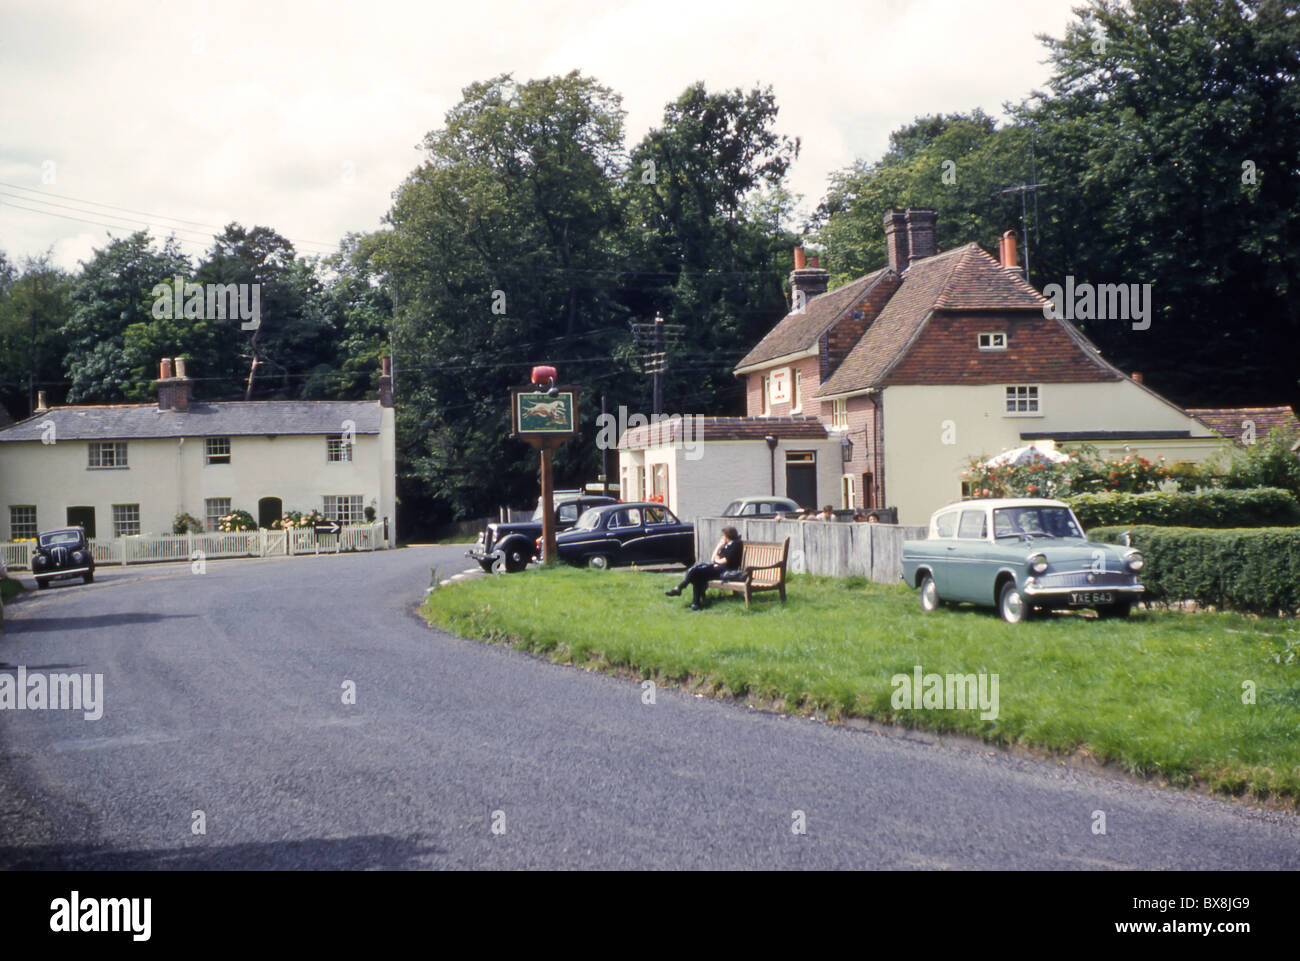 An original 60's snap shot of the Cumbrian town of Keswick, England. Stock Photo